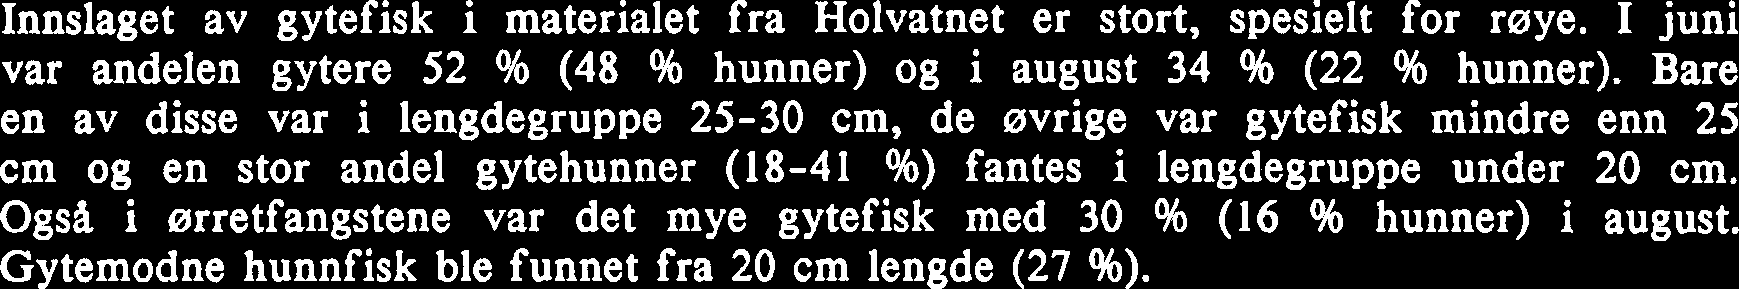 Andelen av gytemoden fisk i materialet fra Holvatn og Rødsjøvatn er vist i tabell 4 og vedlegg 2. Innslaget av gytefisk i materialet fra Holvatnet er stort, spesielt for røye.